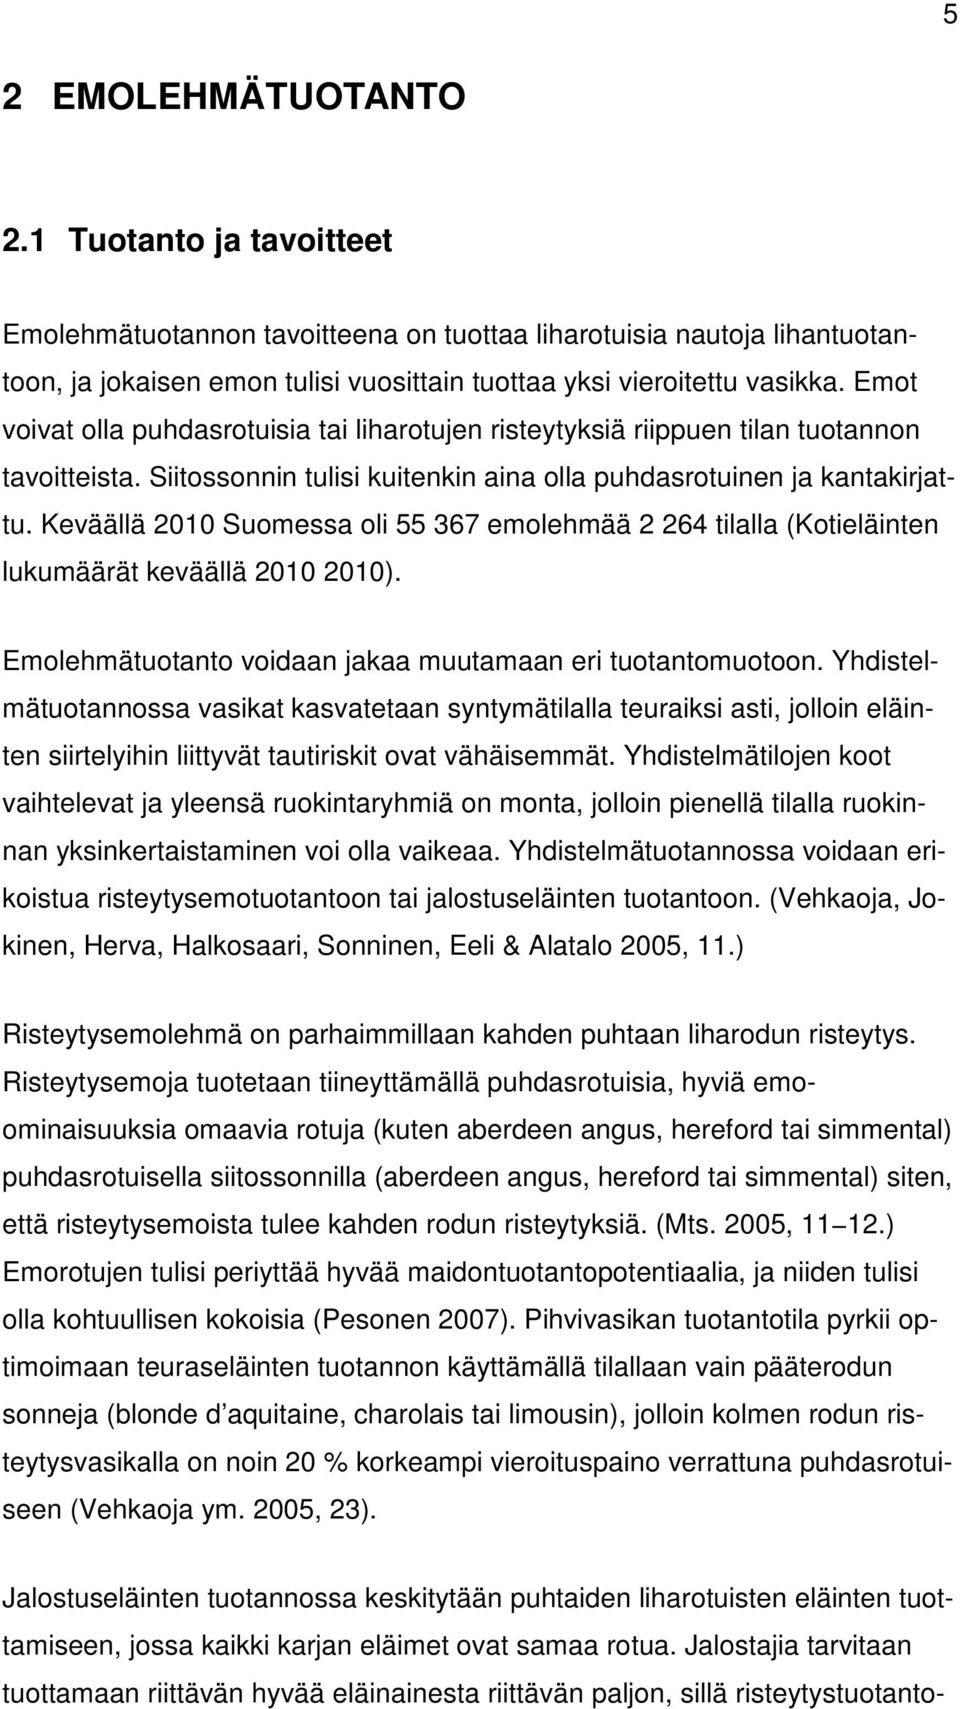 Keväällä 2010 Suomessa oli 55 367 emolehmää 2 264 tilalla (Kotieläinten lukumäärät keväällä 2010 2010). Emolehmätuotanto voidaan jakaa muutamaan eri tuotantomuotoon.